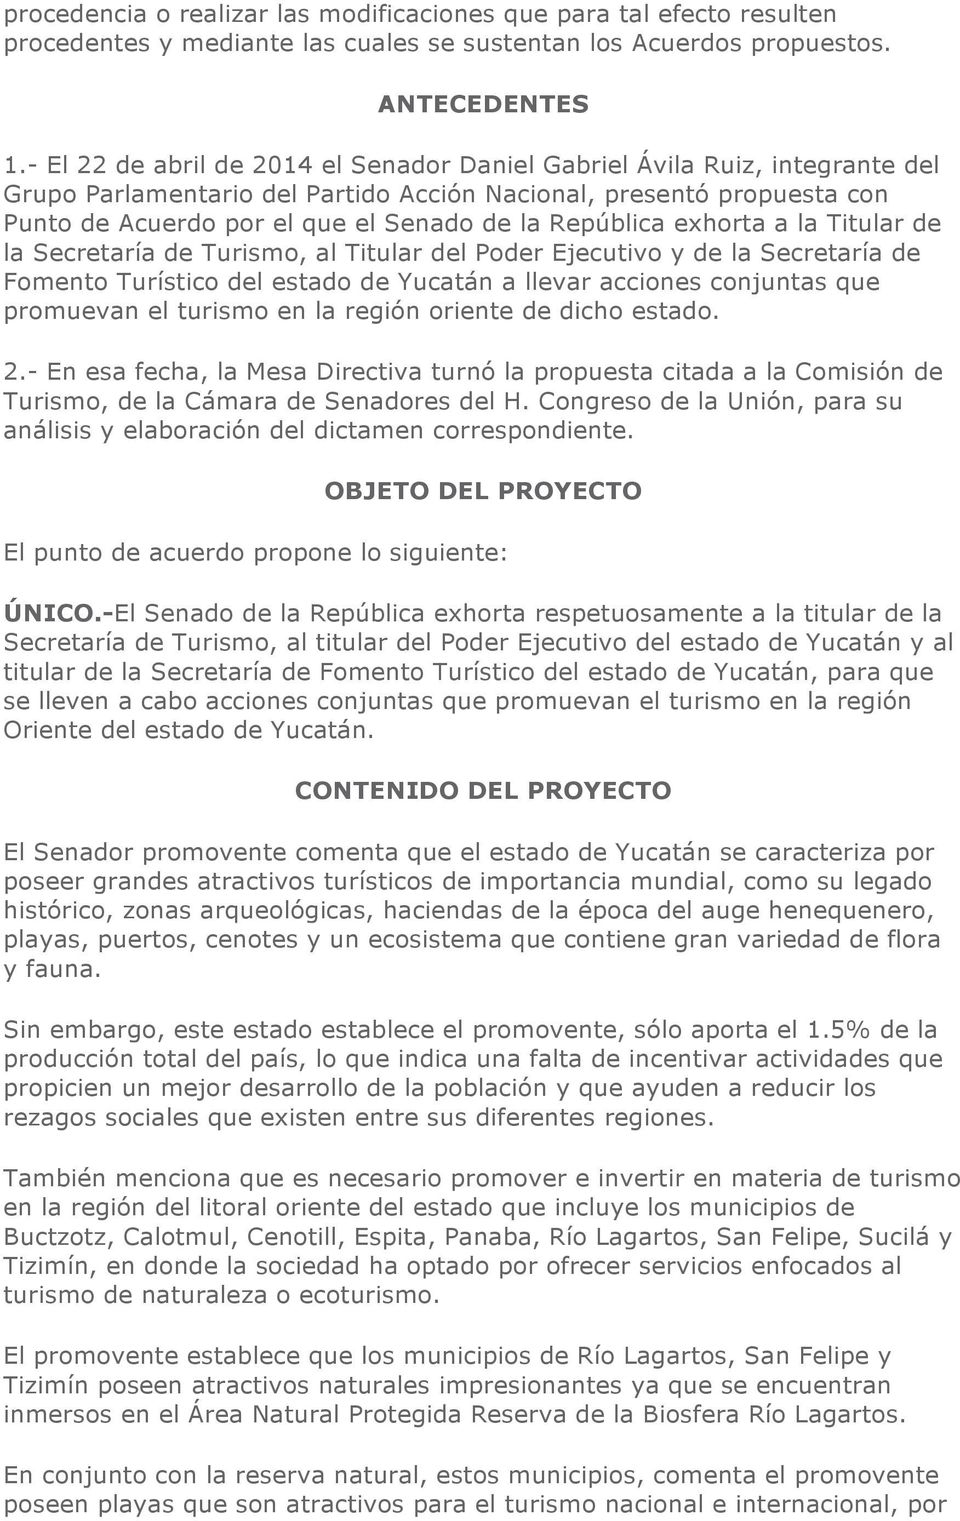 República exhorta a la Titular de la Secretaría de Turismo, al Titular del Poder Ejecutivo y de la Secretaría de Fomento Turístico del estado de Yucatán a llevar acciones conjuntas que promuevan el